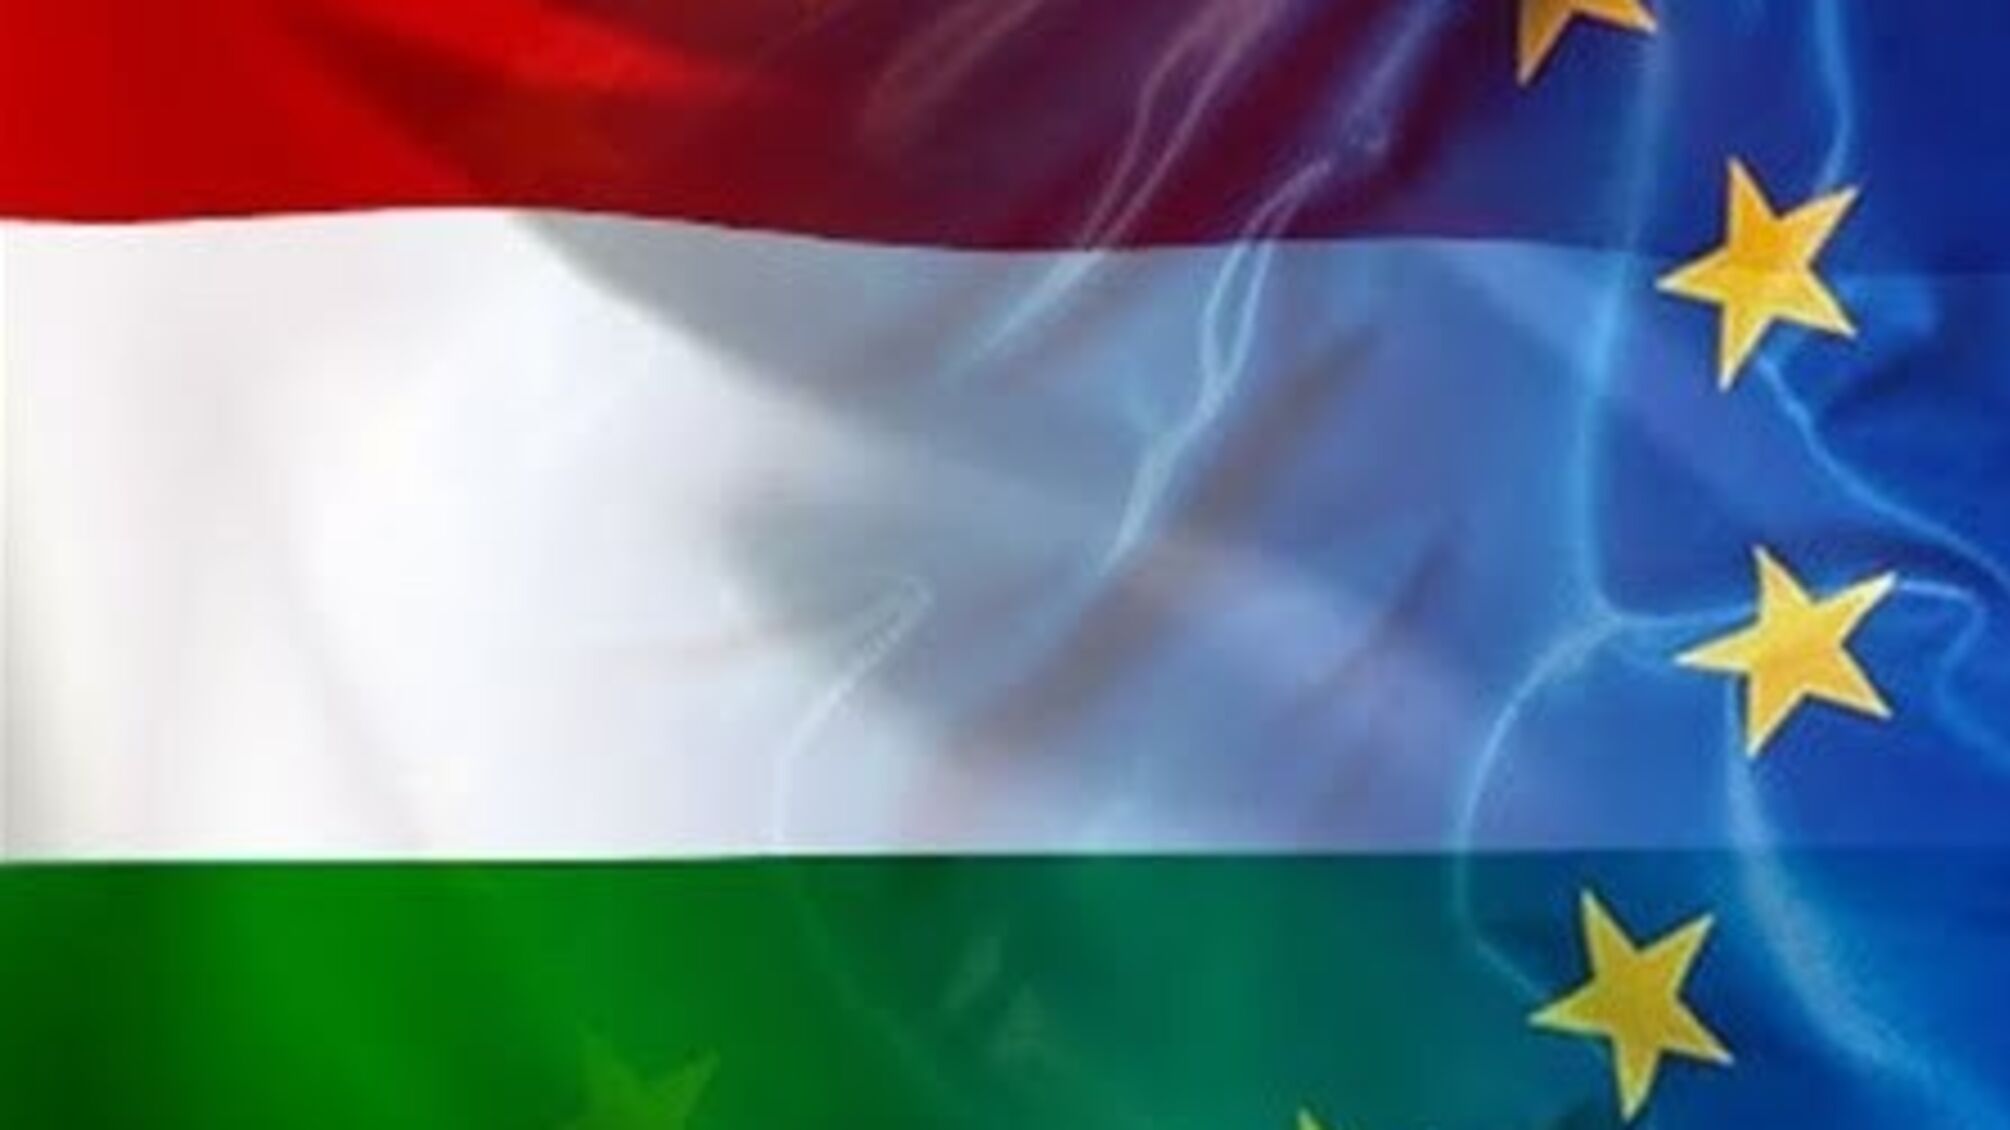 В Угорщині розпочалася кампанія проти ЄС